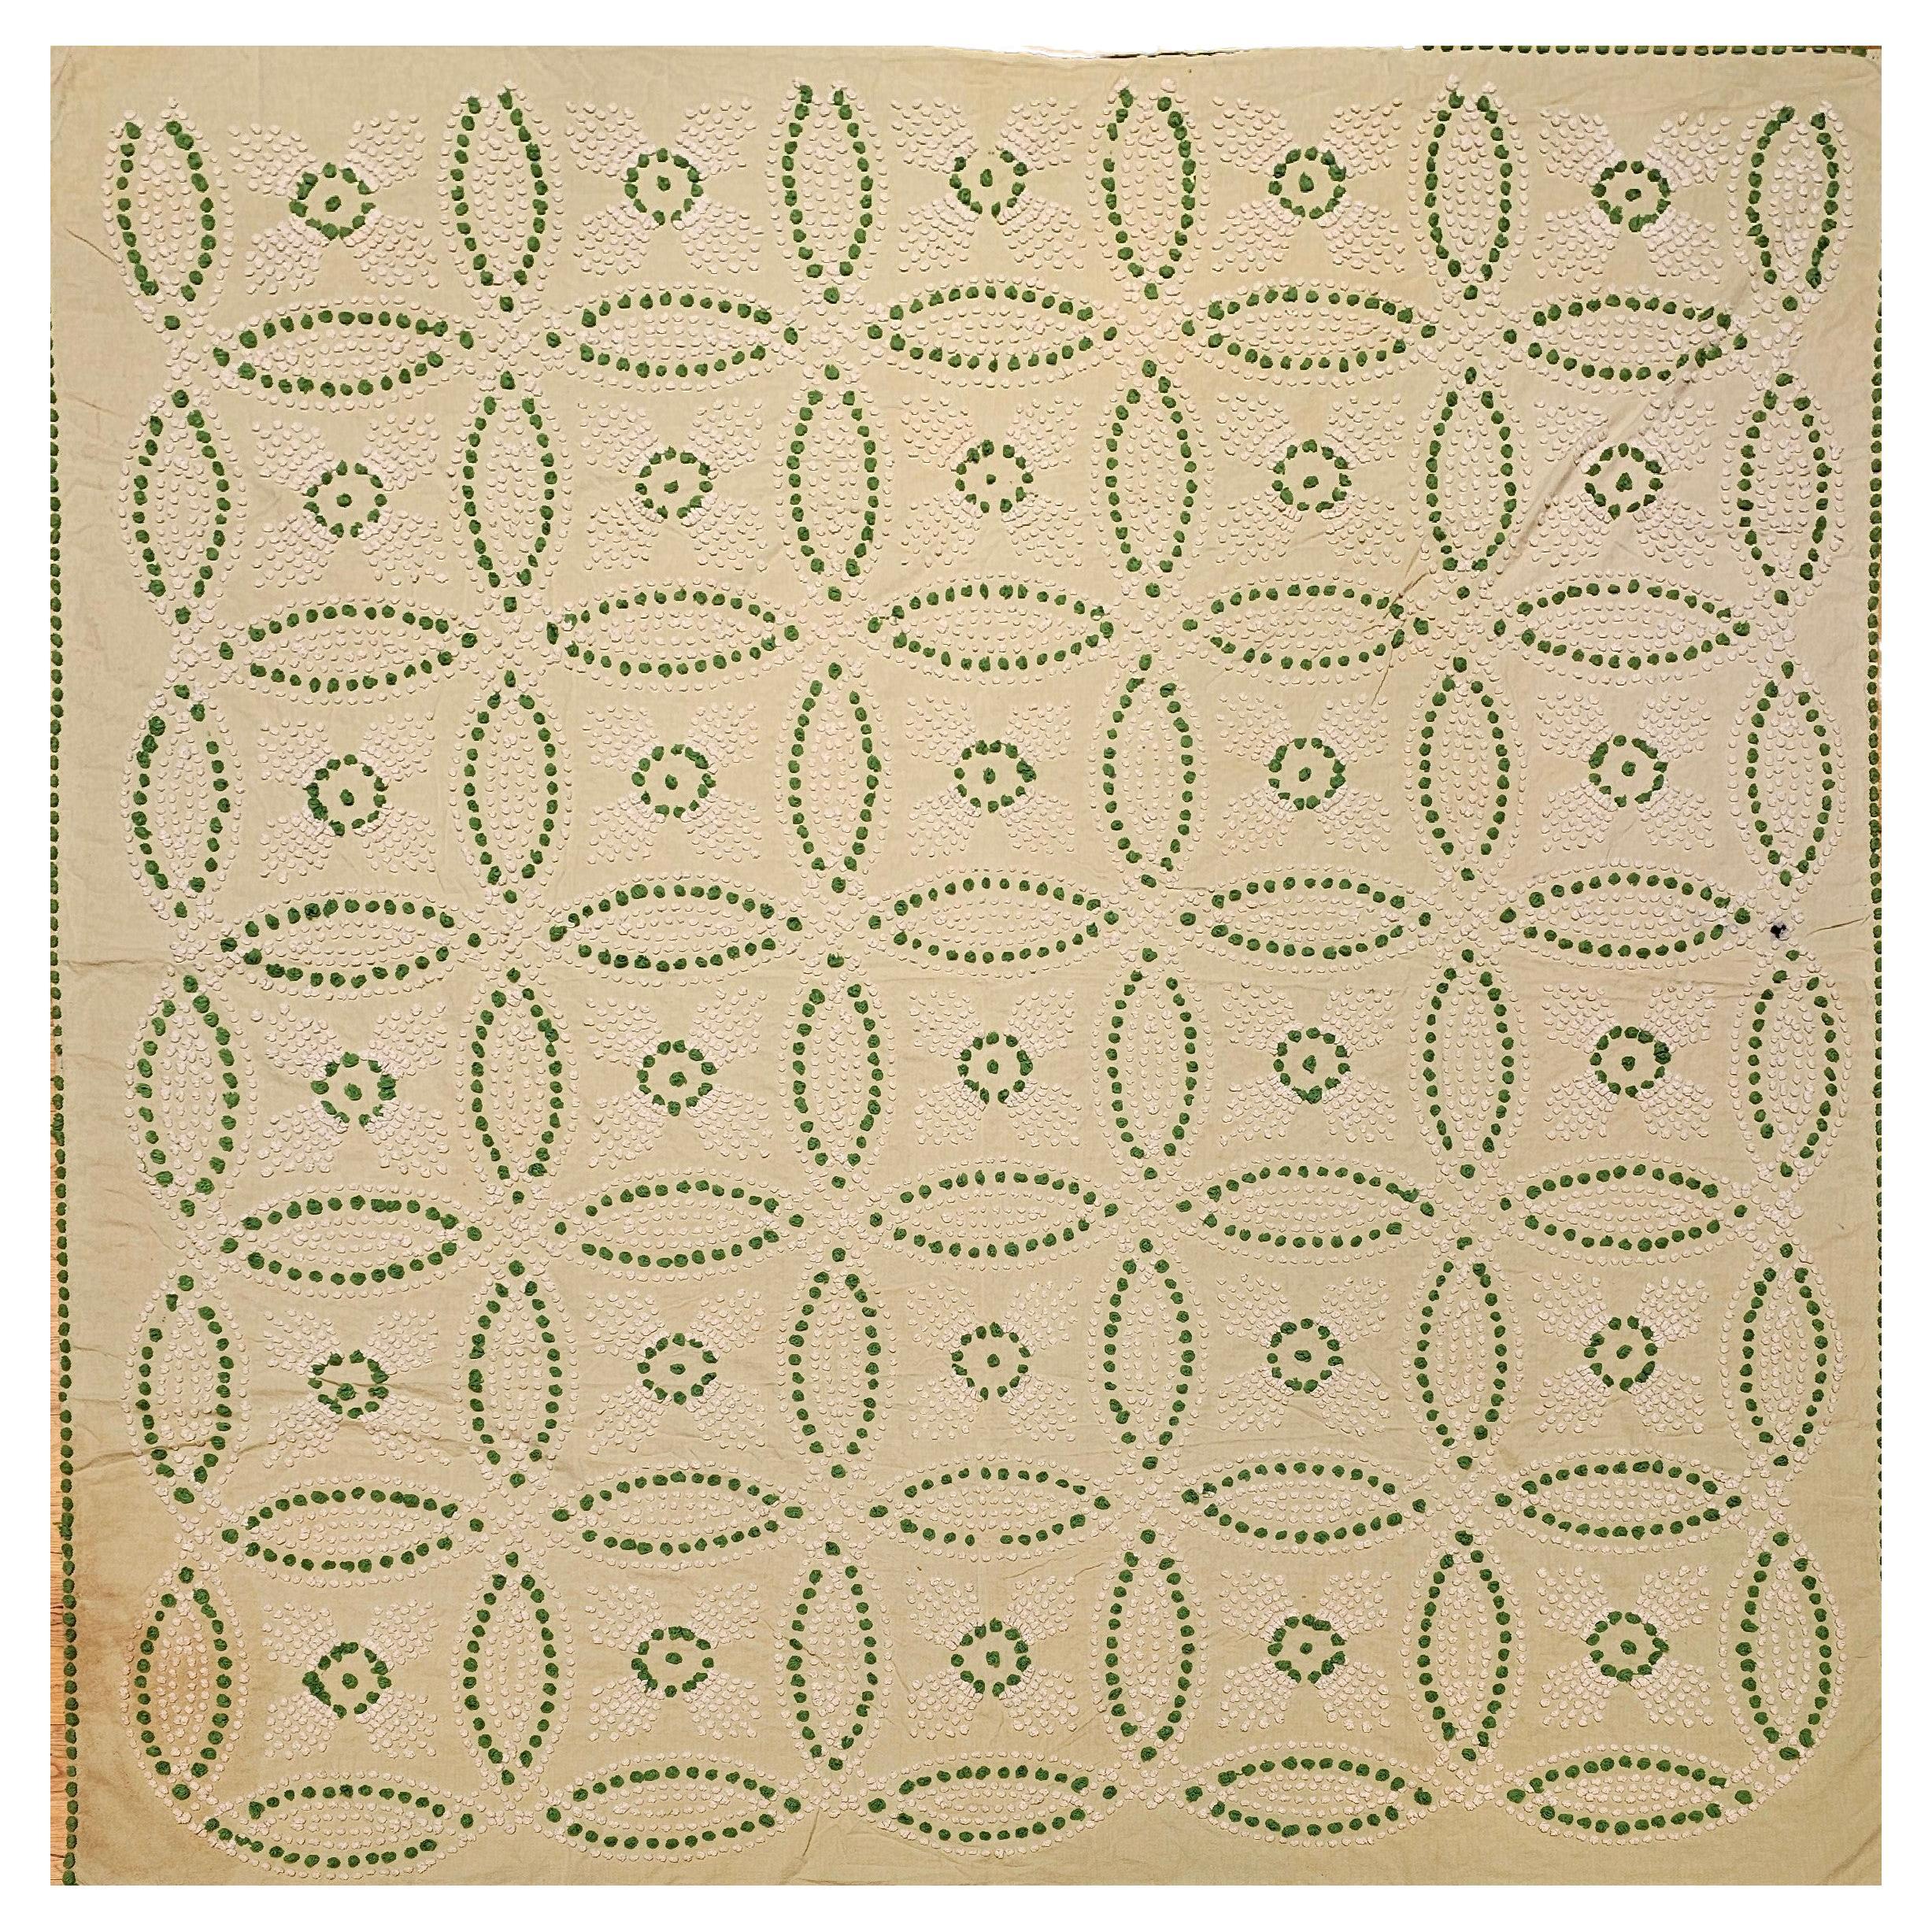 Vintage Southern Quilt in Hochzeitsring-Muster in Blassgrün, Elfenbein, Grün